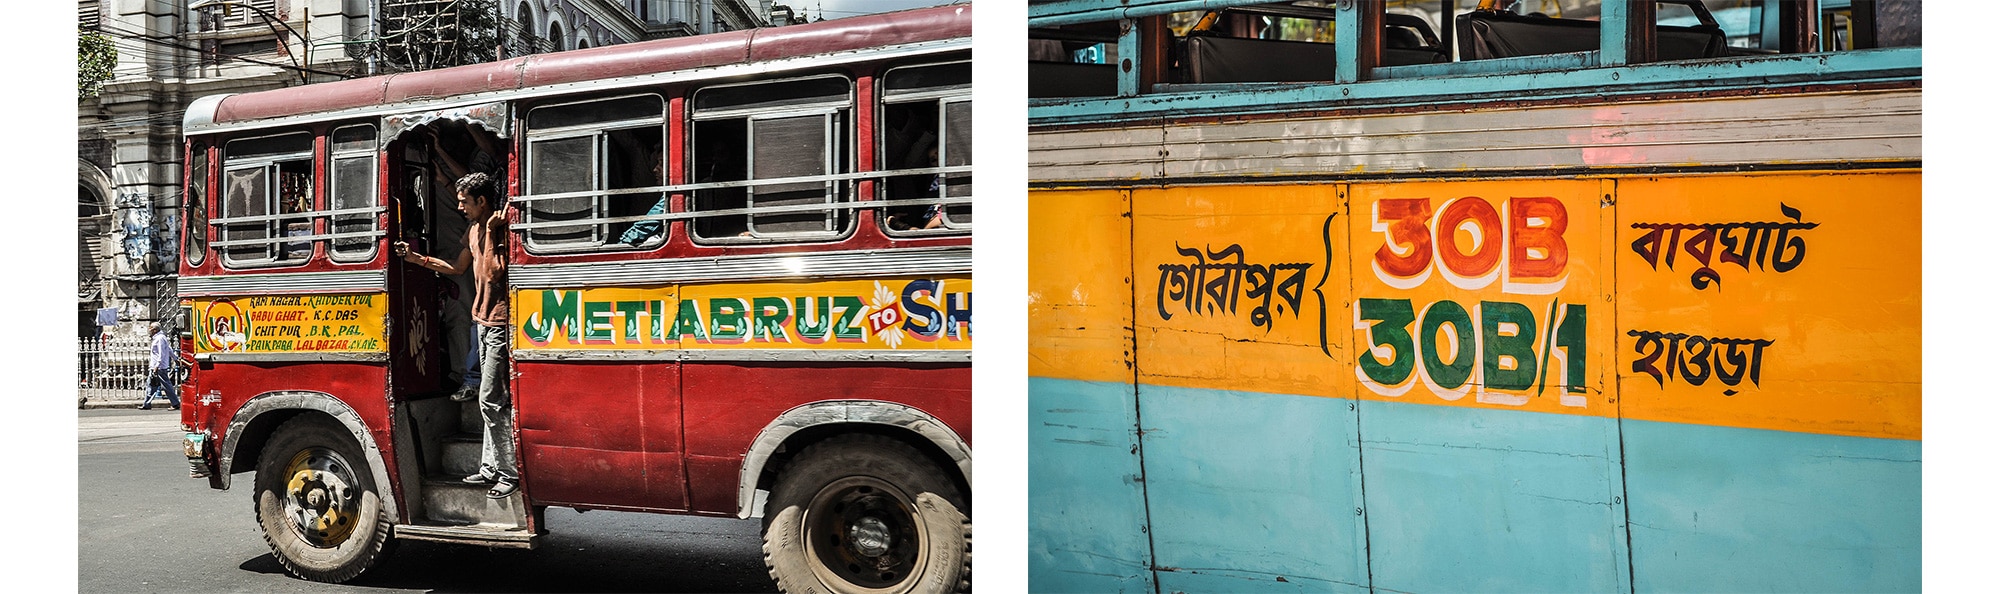 Des bus à Calcutta en Inde